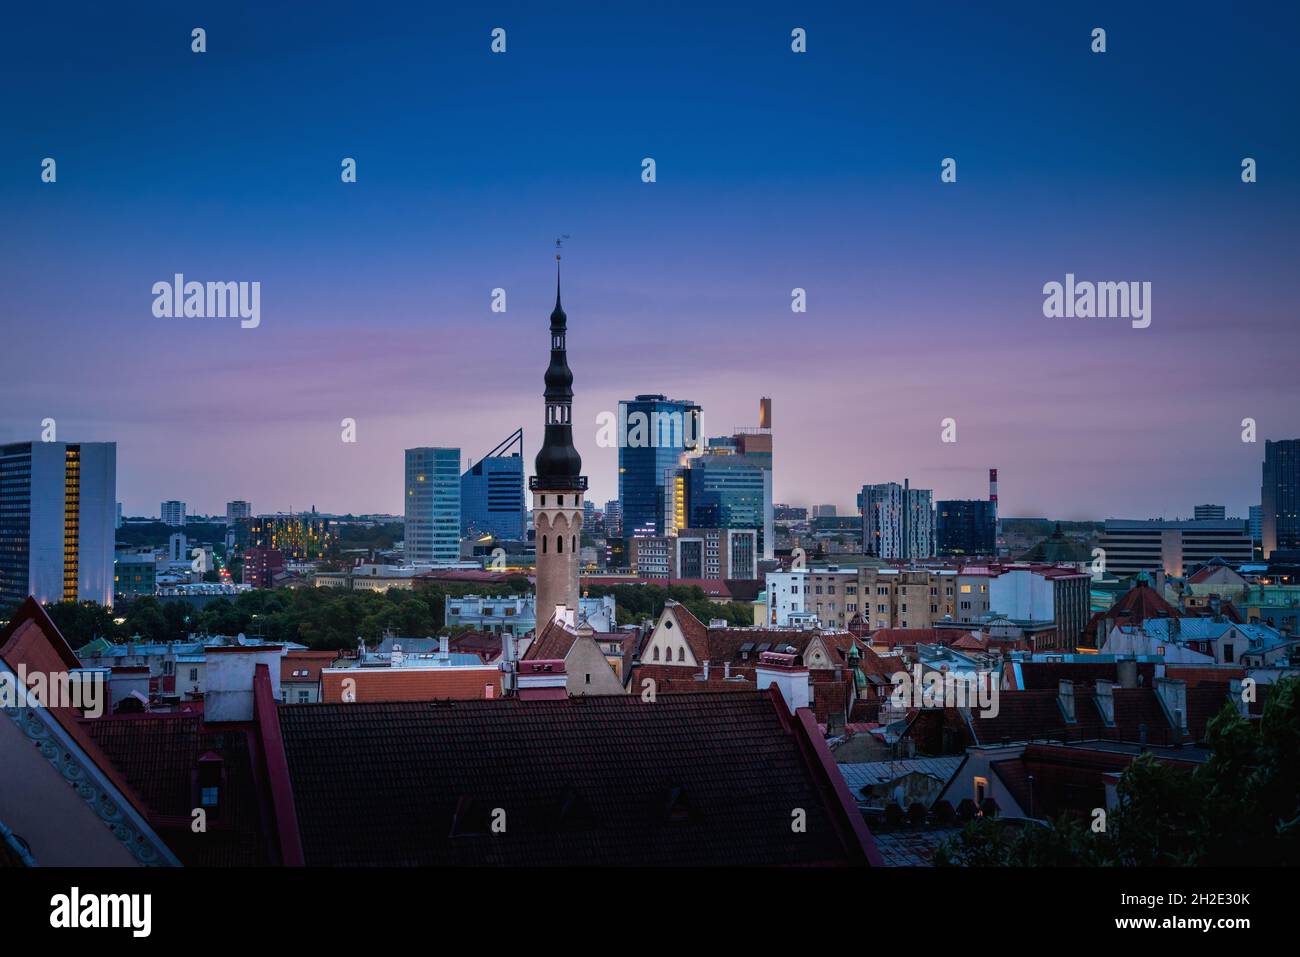 Skyline von Tallinn bei Sonnenuntergang mit Rathausturm und den modernen Gebäuden des Stadtzentrums im Hintergrund - Tallinn, Estland Stockfoto